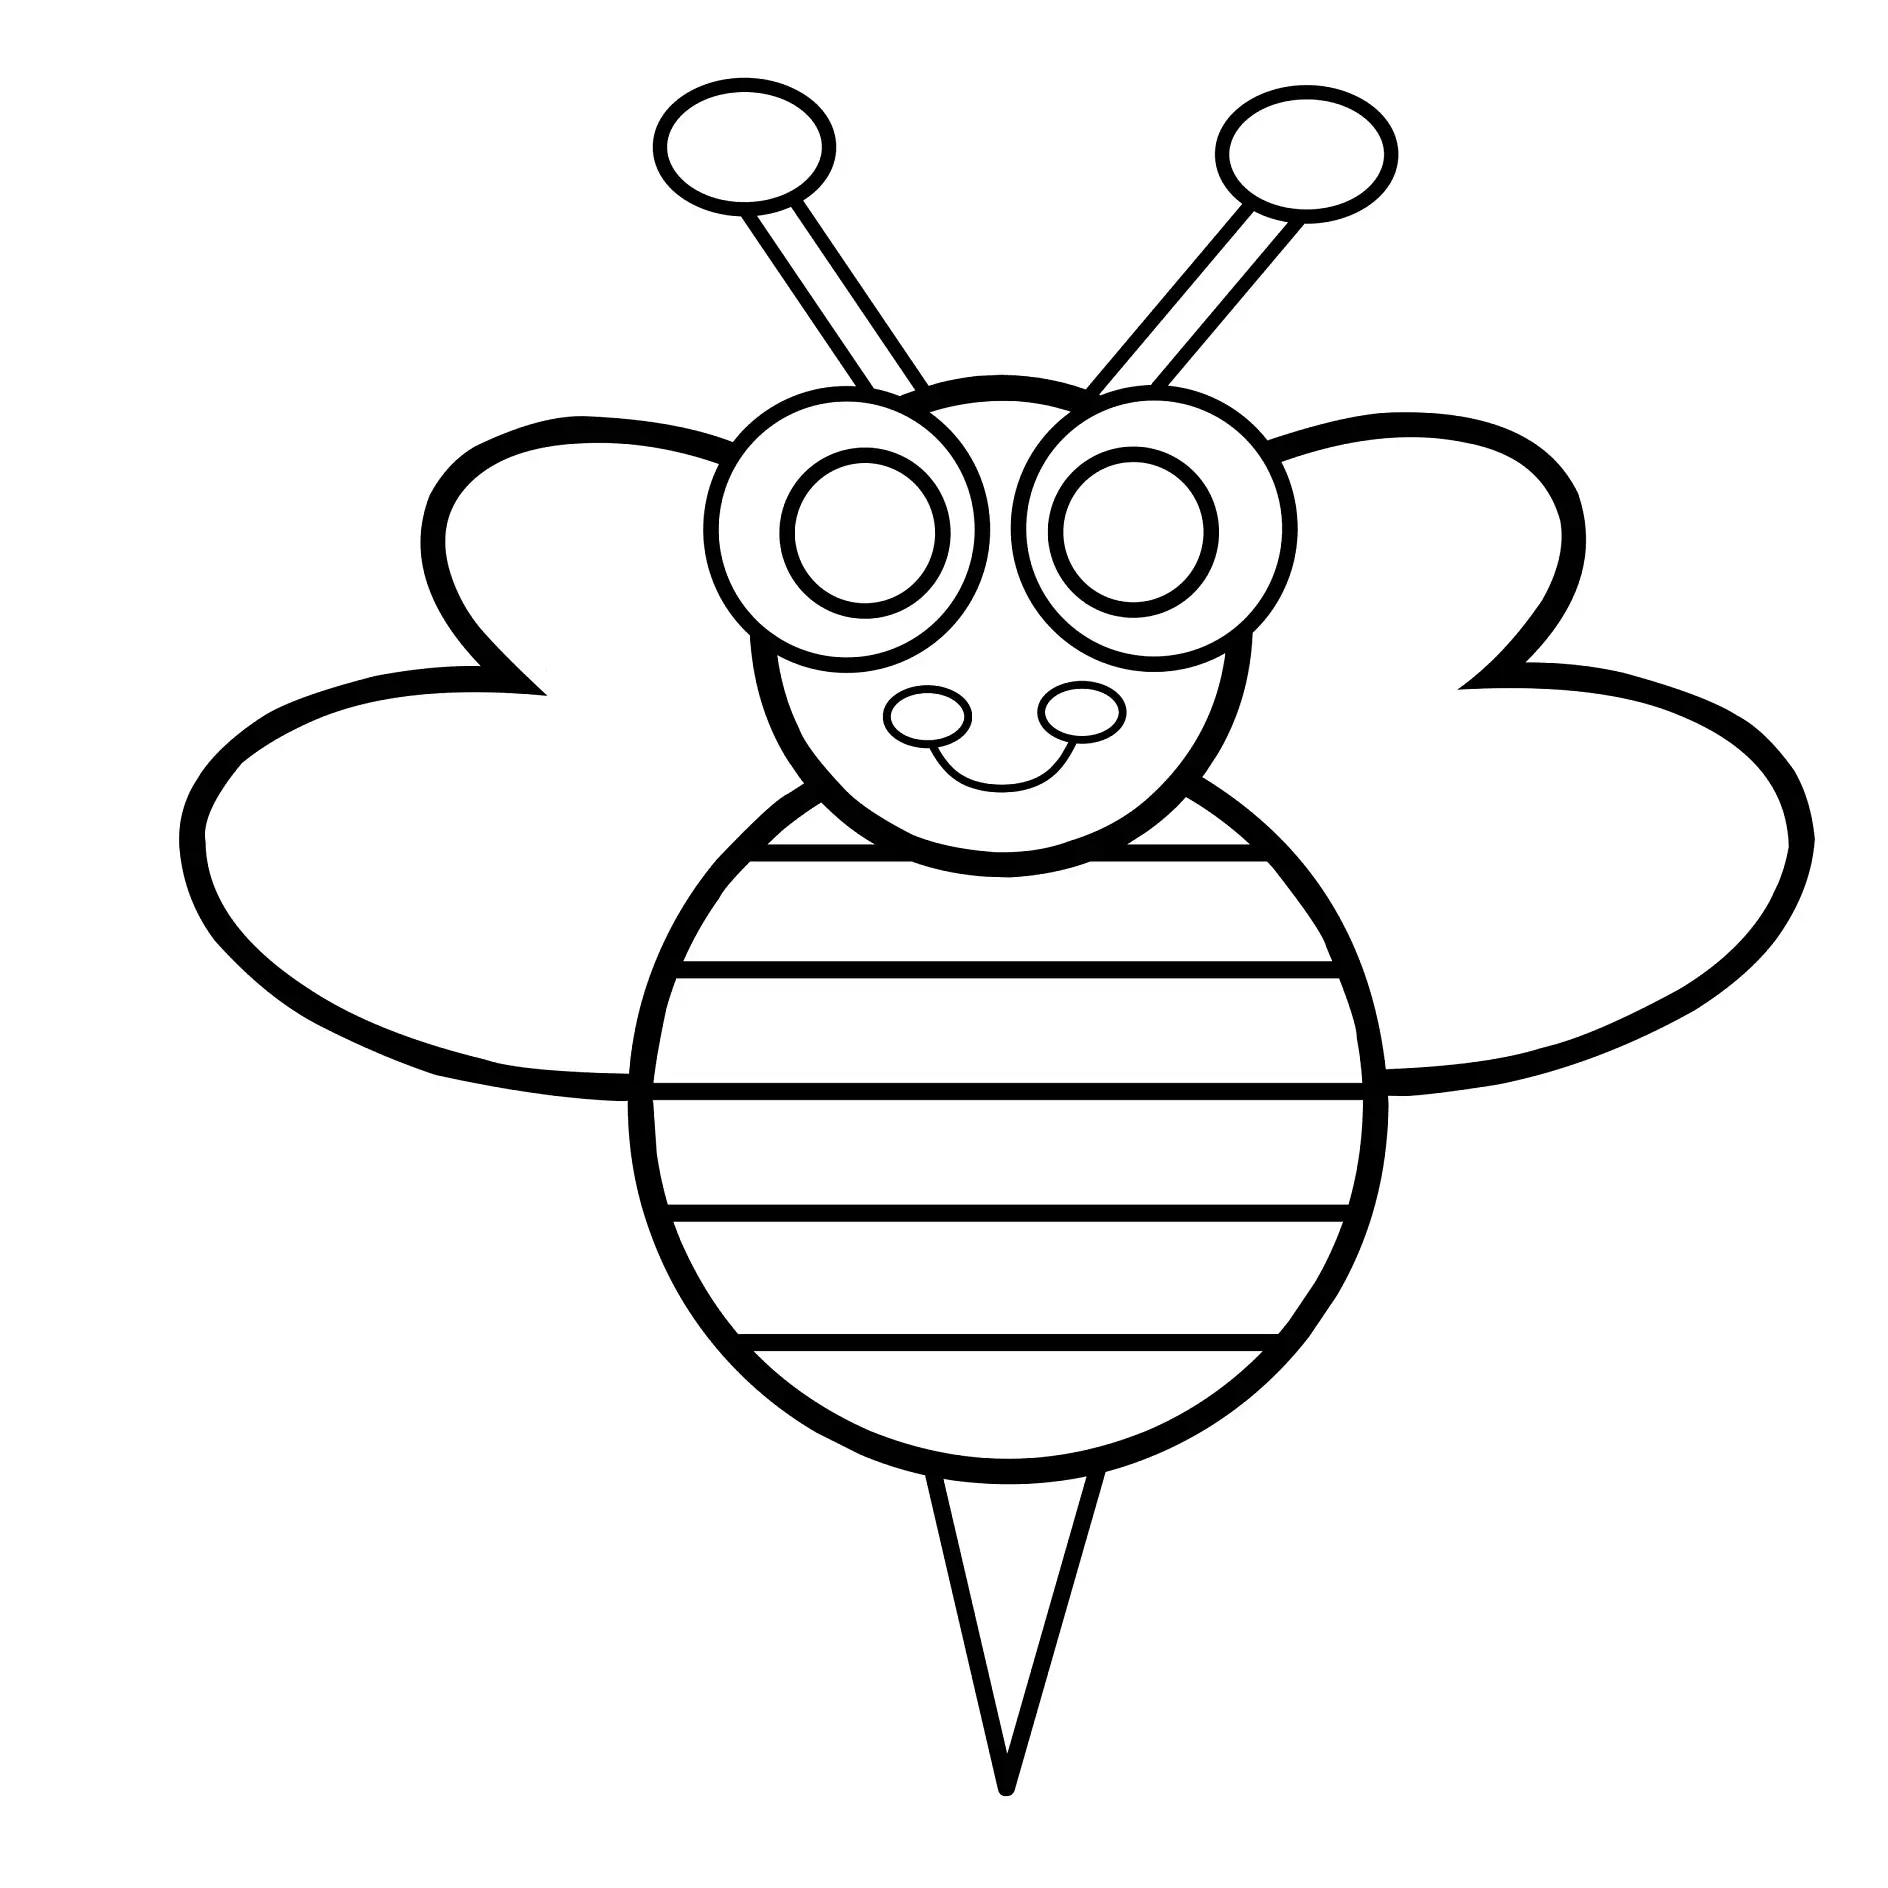 Ausmalbild Biene mit großen Augen und gestreiftem Körper